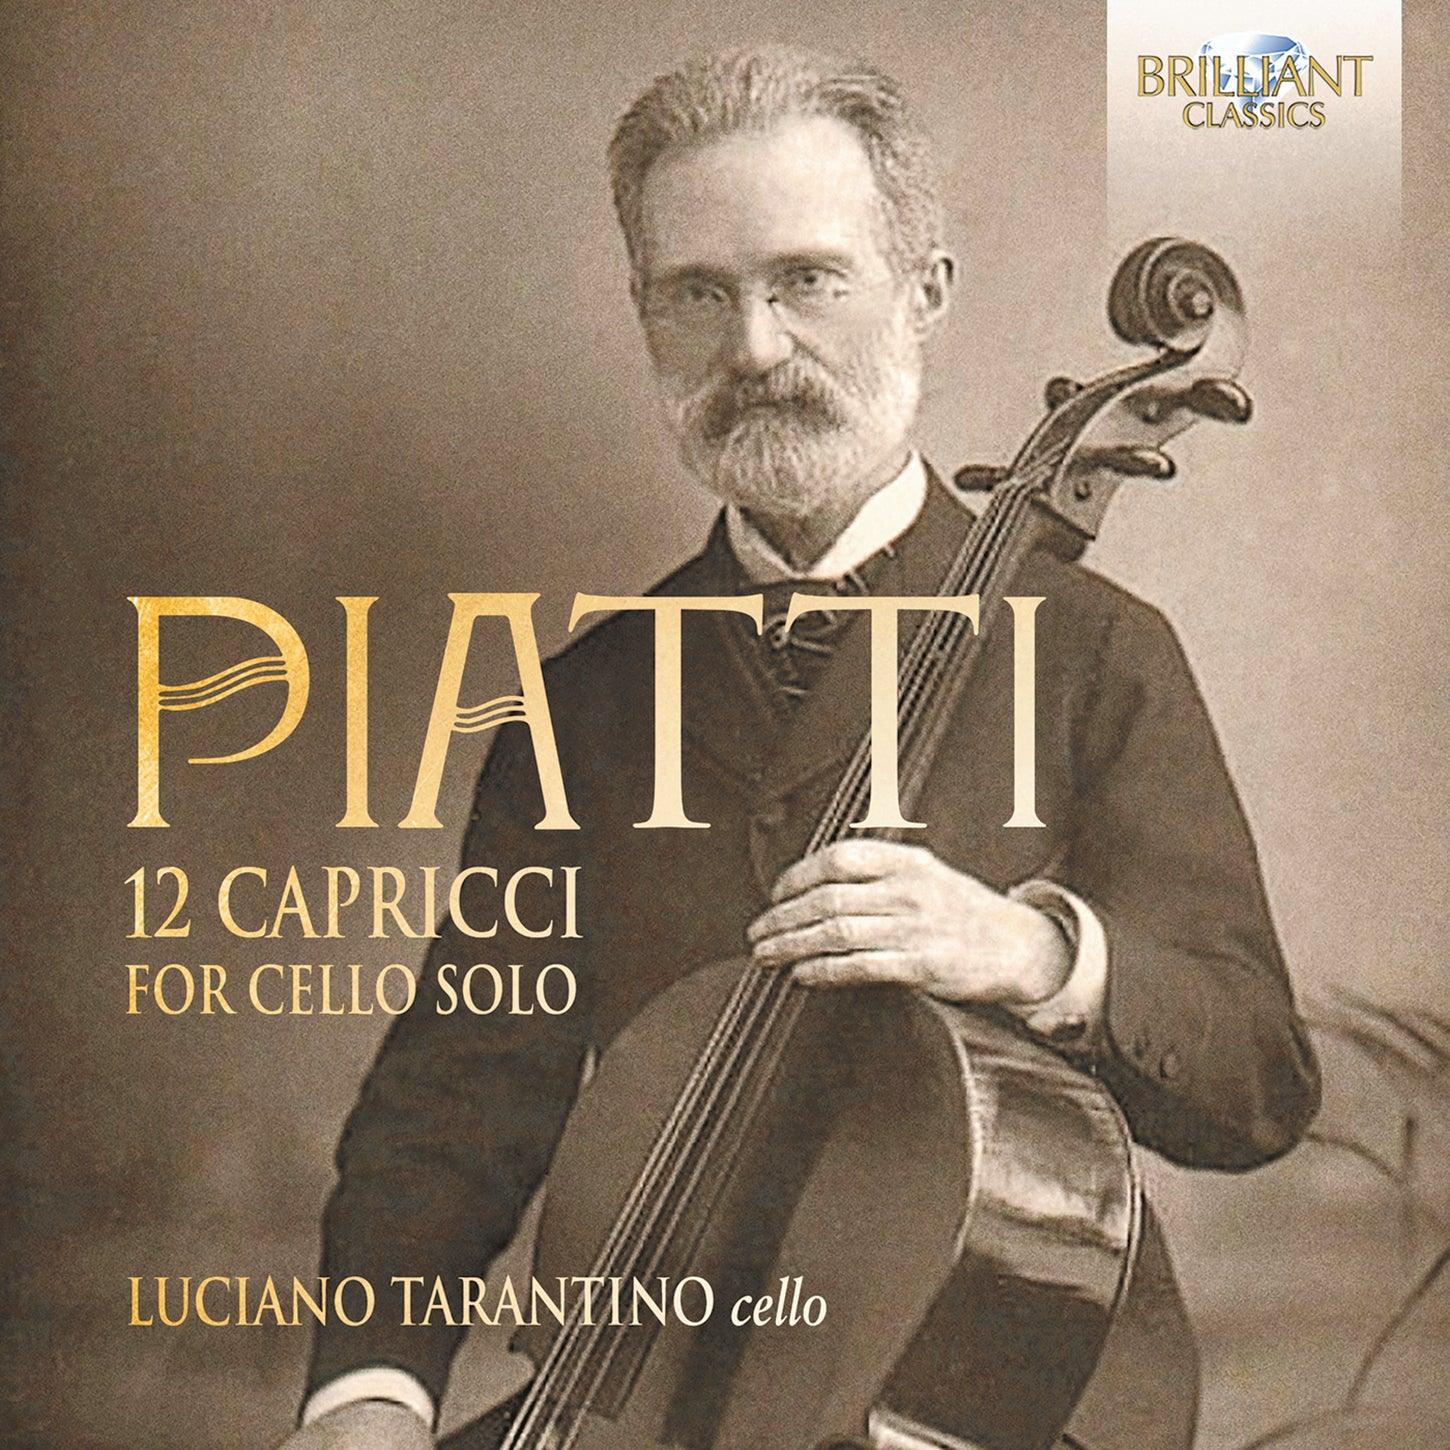 Piatti: 12 Capricci for Cello Solo / Tarantino - ArkivMusic